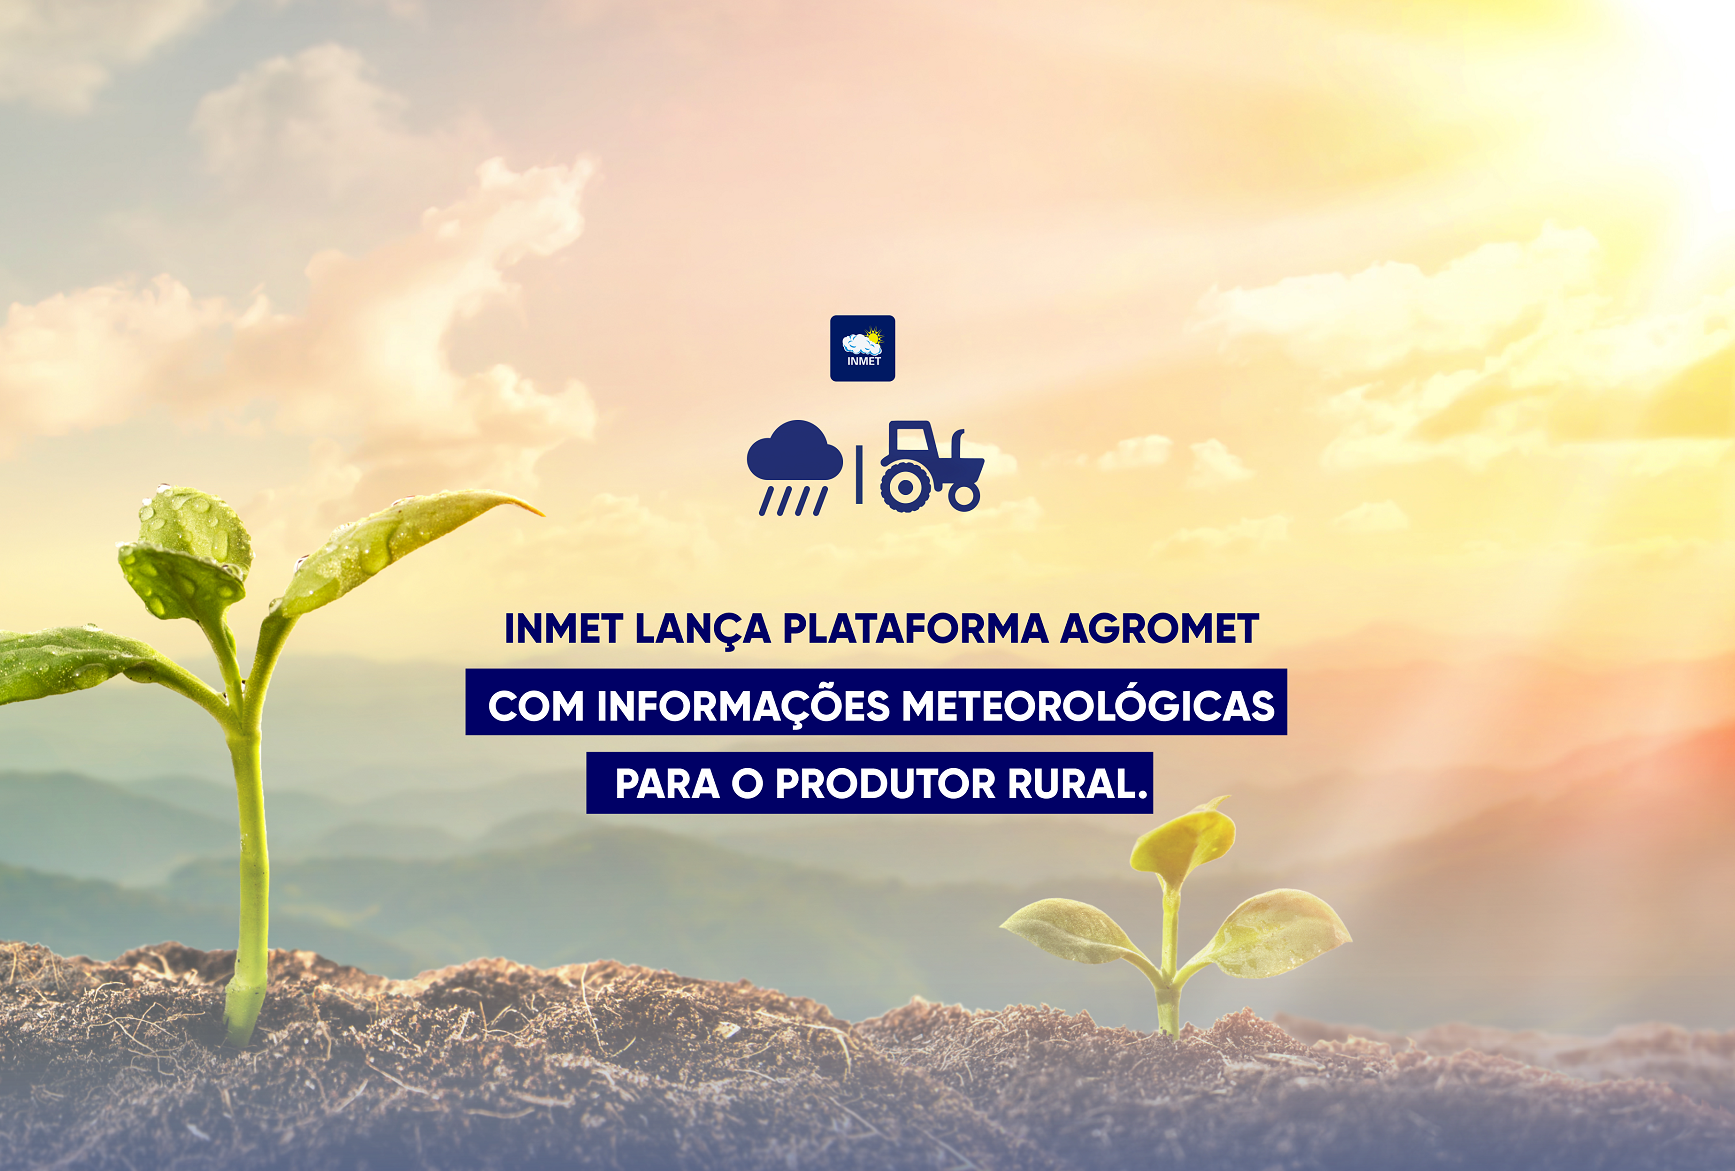 INMET LANÇA PLATAFORMA AGROMET COM INFORMAÇÕES METEOROLÓGICAS PARA O PRODUTOR RURAL.